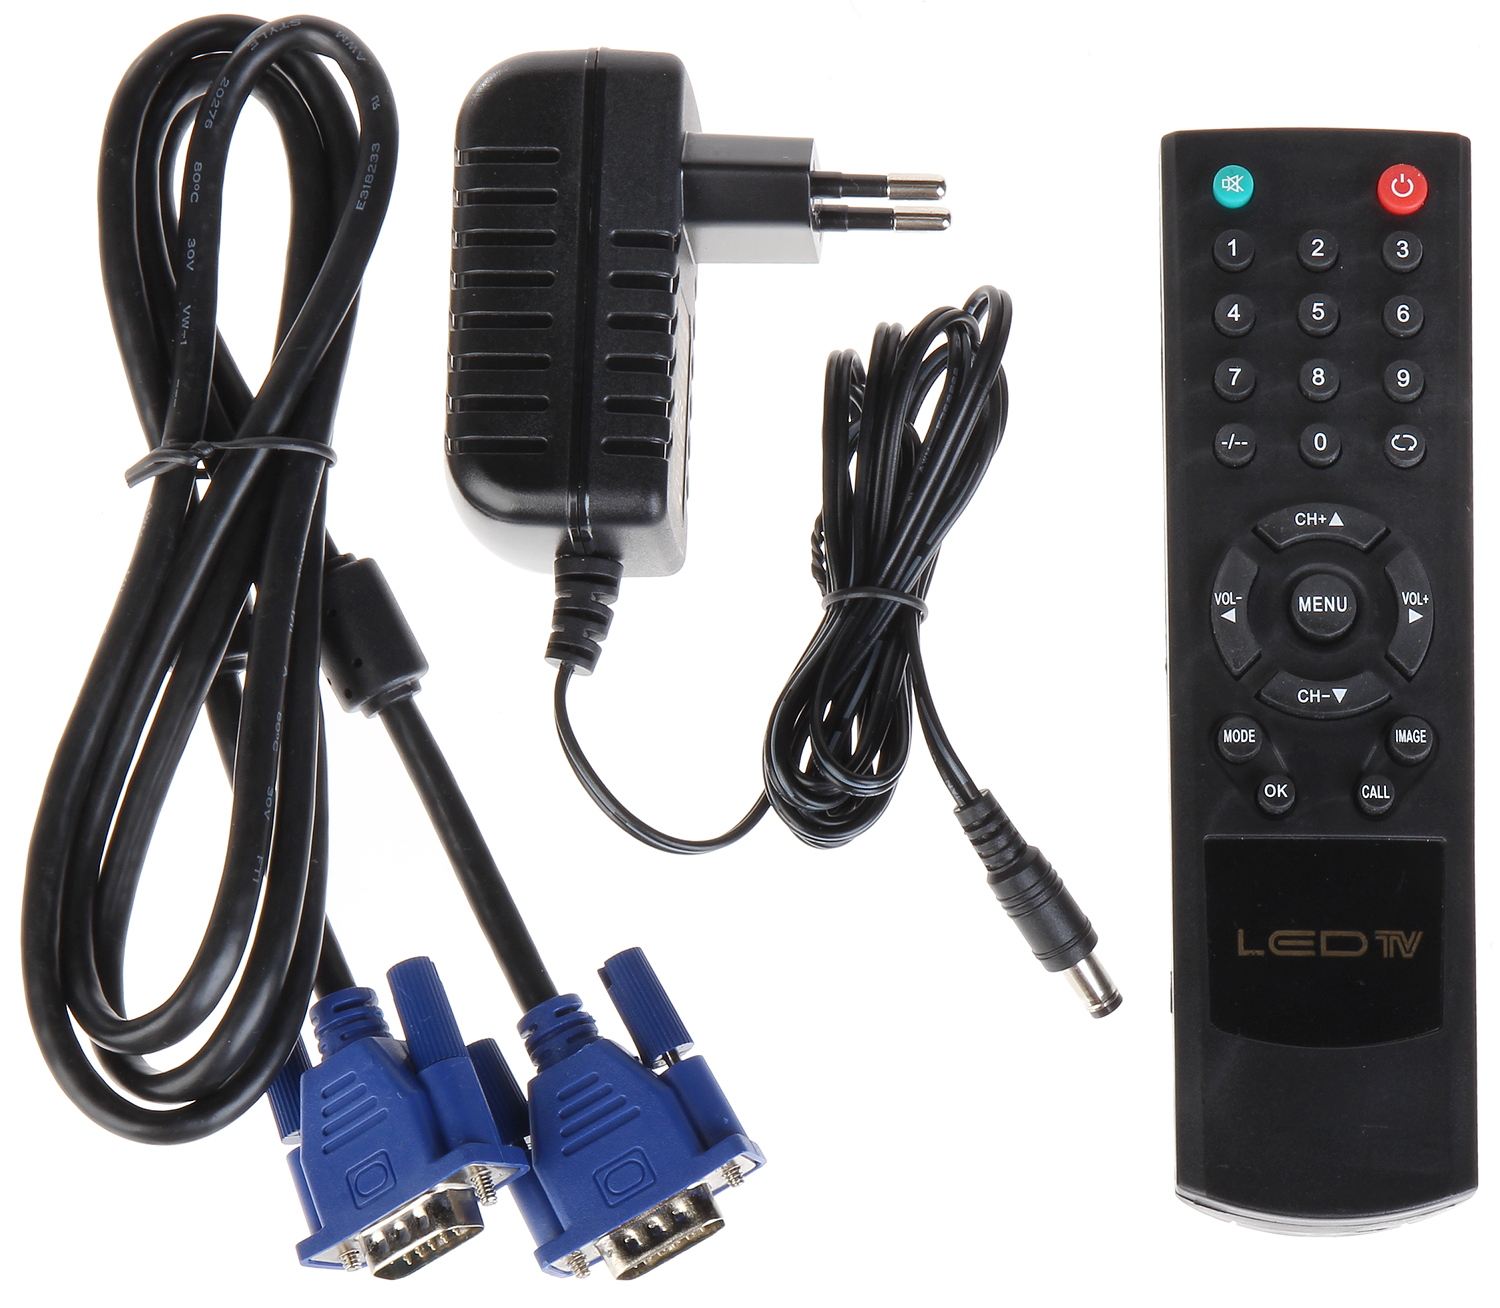 MONITOR VGA, HDMI, AUDIO, 2XVIDEO, USB, REMOTE CONTROL... - LCD Monitors -  Delta